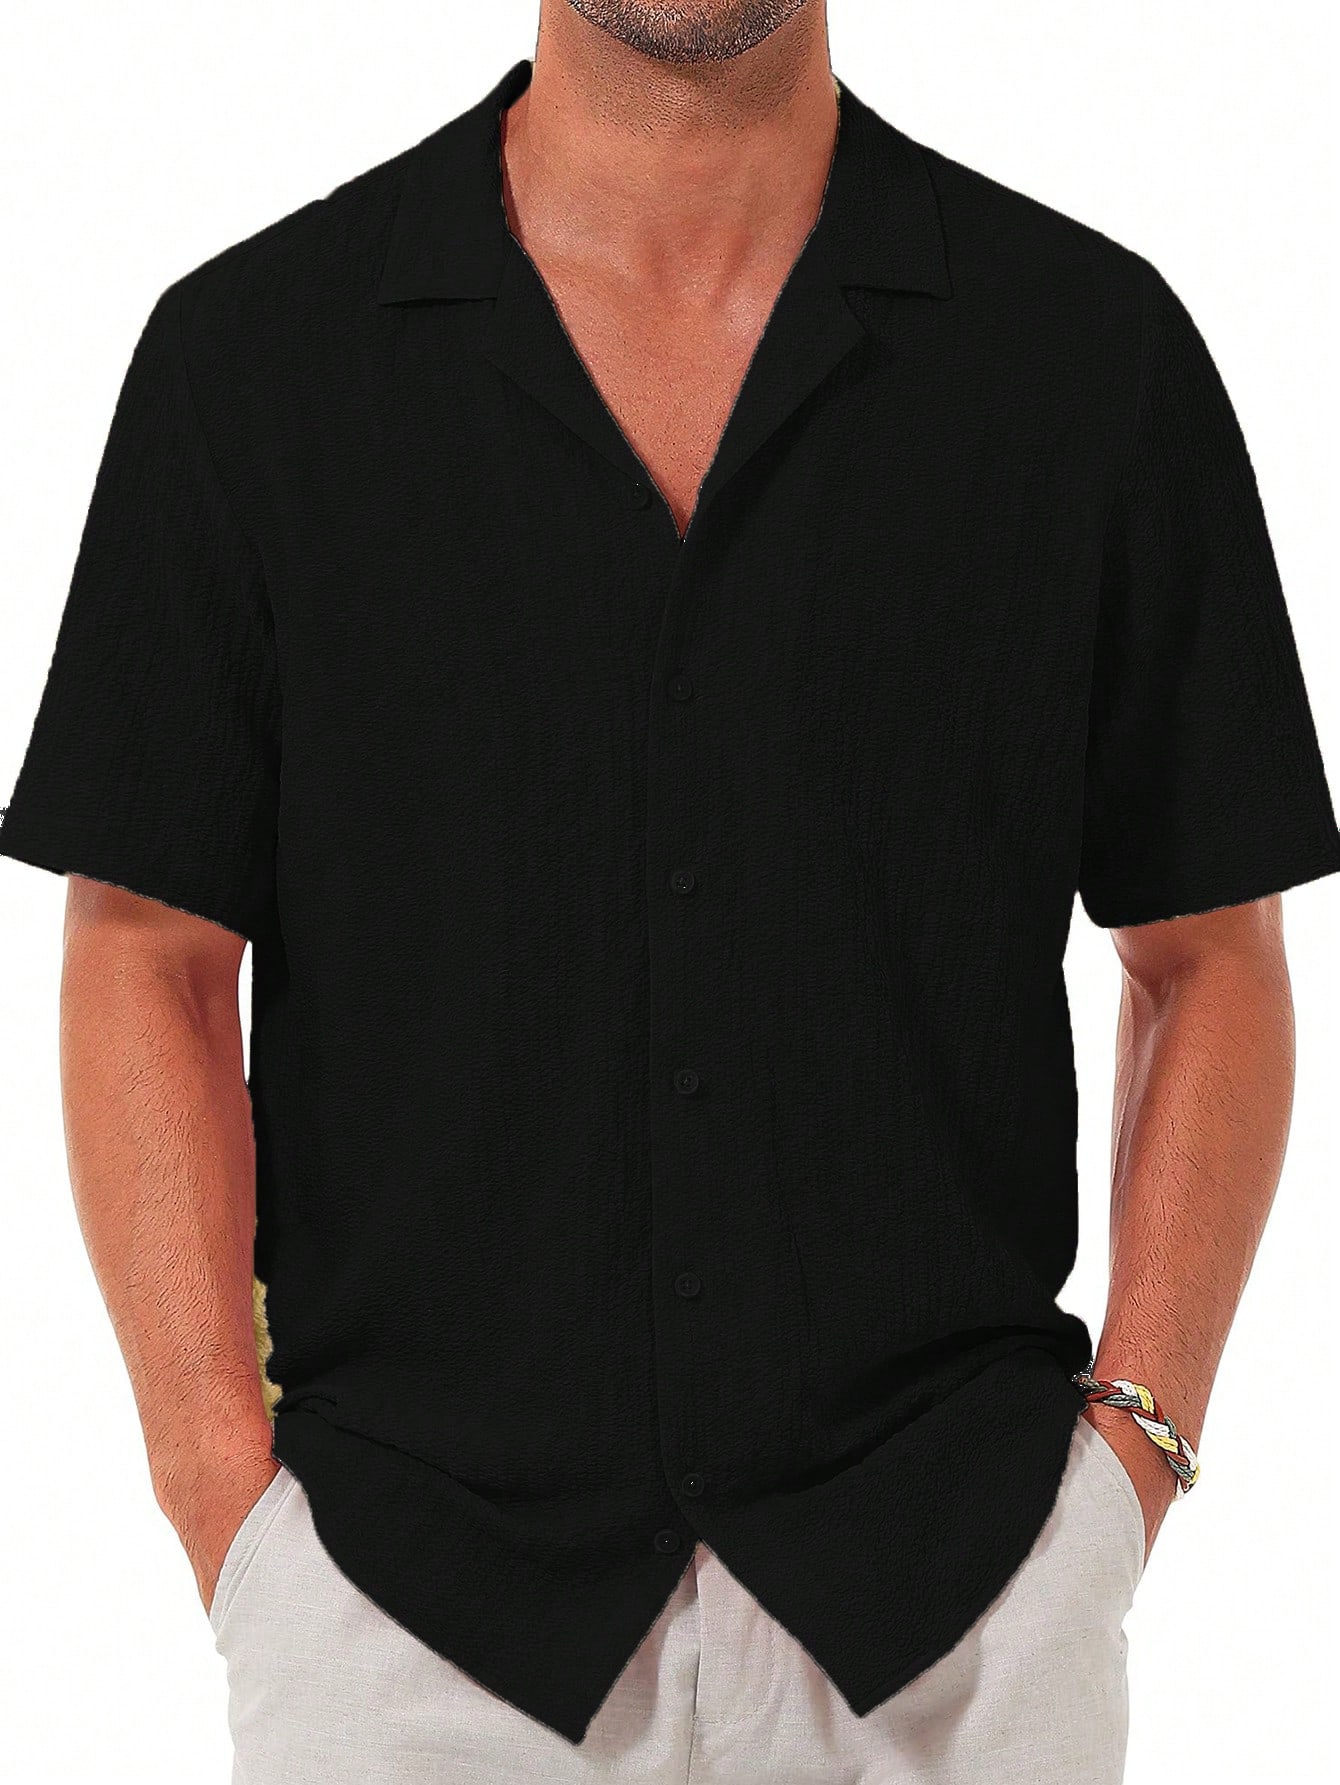 Мужская повседневная рубашка с коротким рукавом на пуговицах, черный